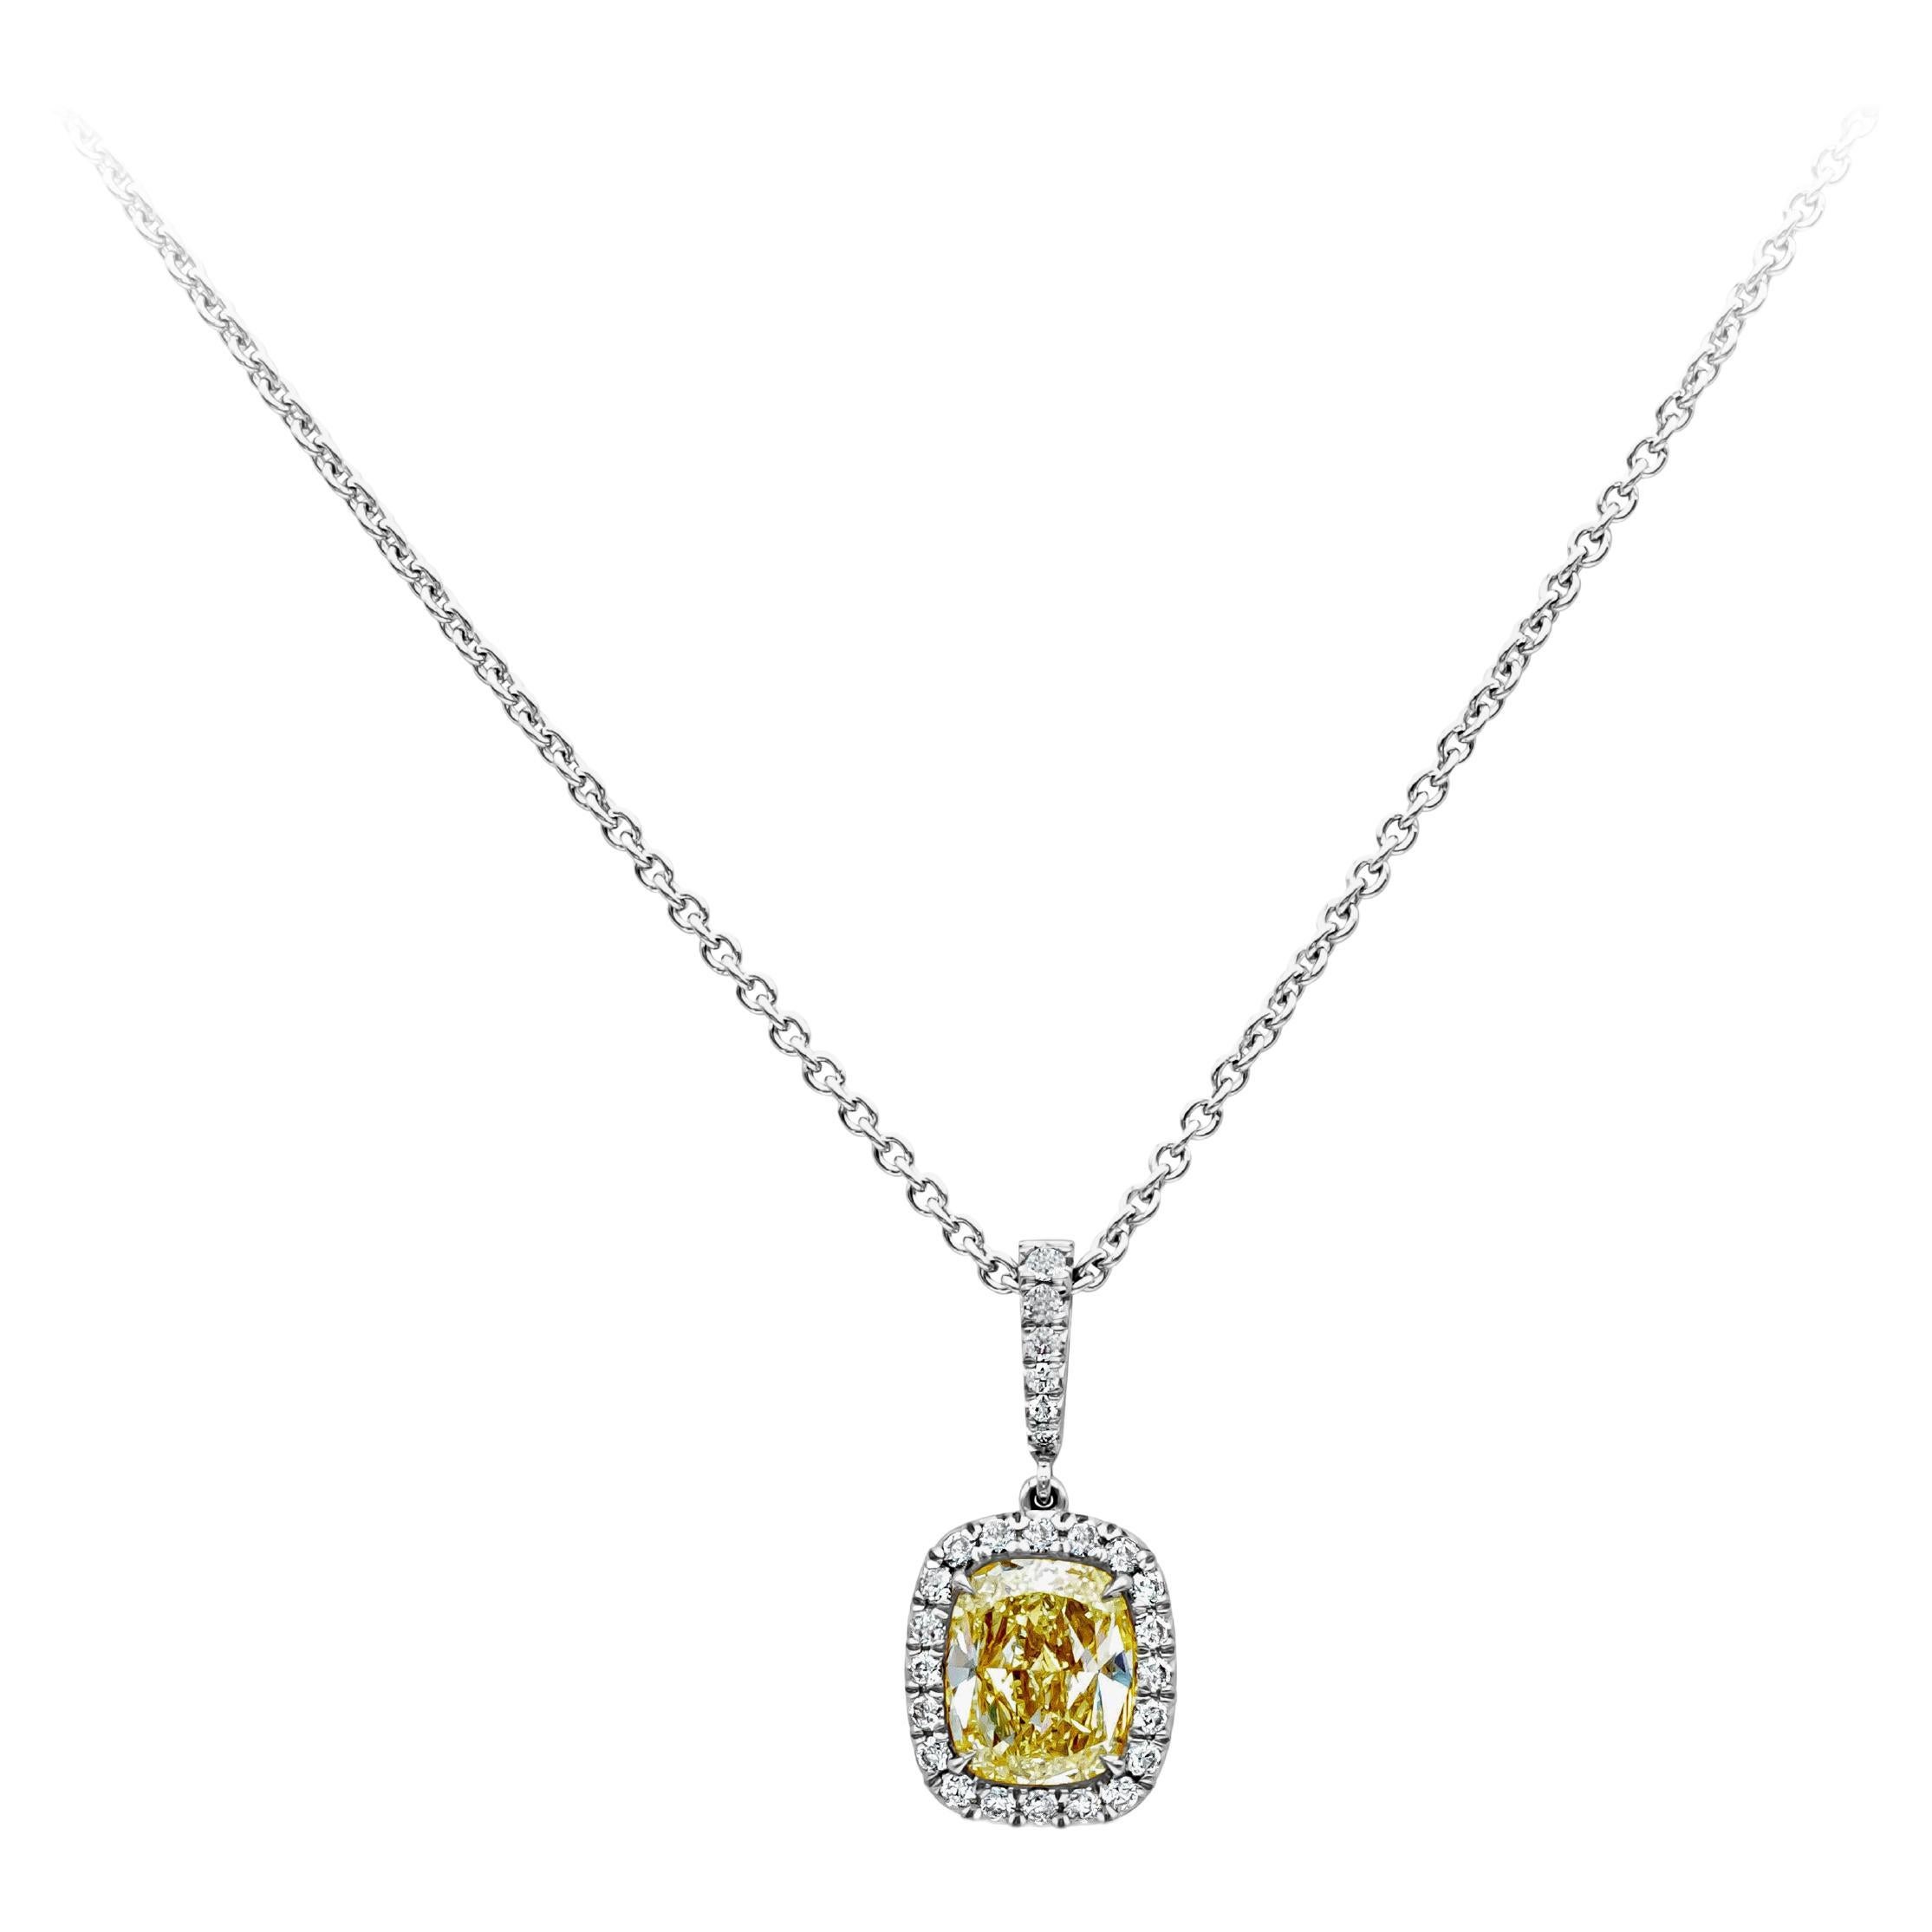 Collier avec pendentif en diamant certifié GIA de 1,55 carats, taille coussin, couleur fantaisie